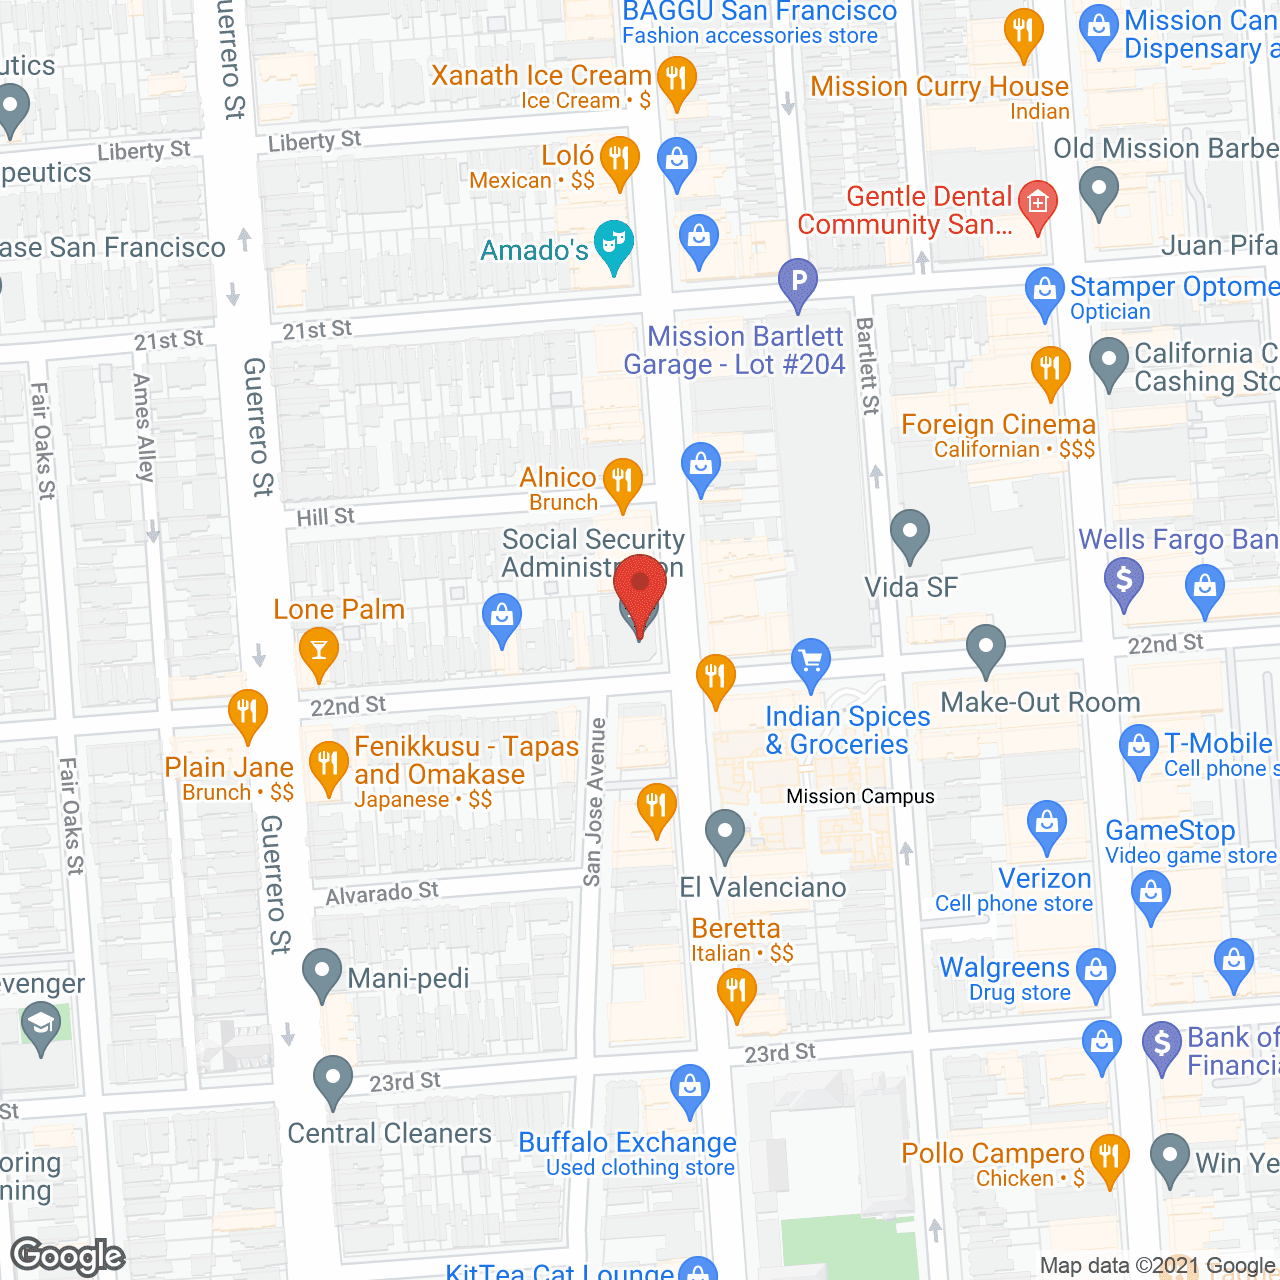 Bethany Center Senior Housing in google map